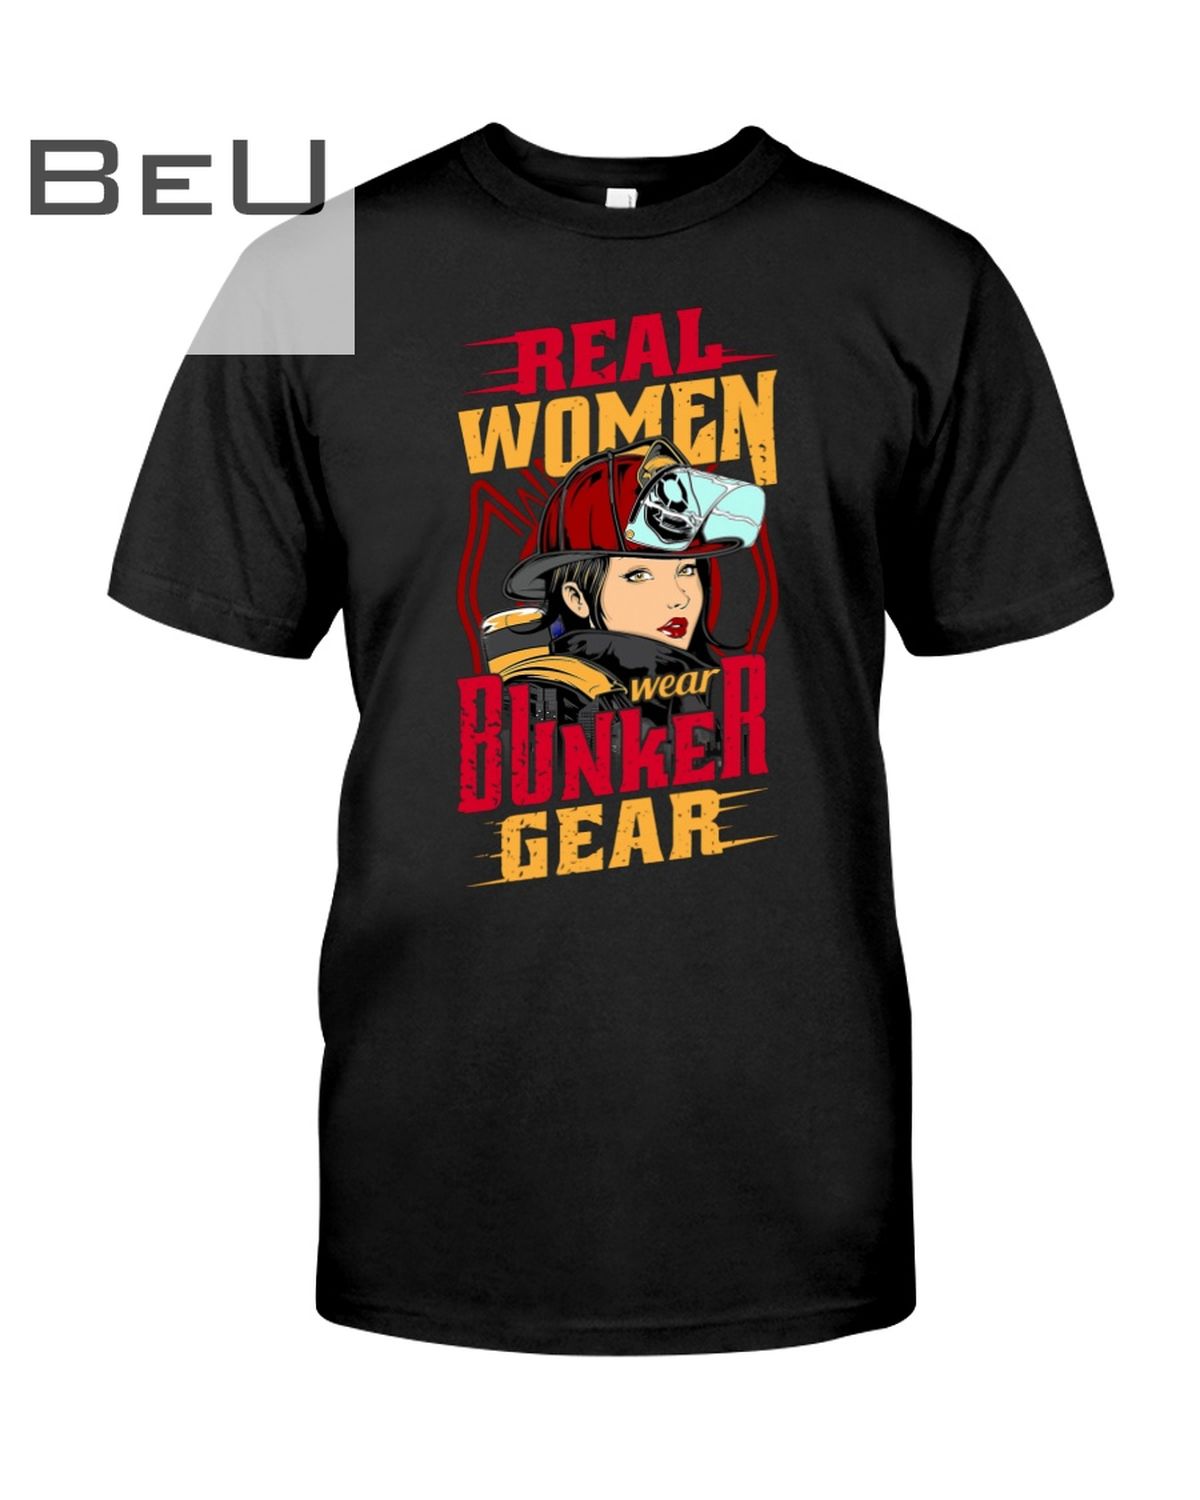 Real Women Wear Bunker Gear Shirt